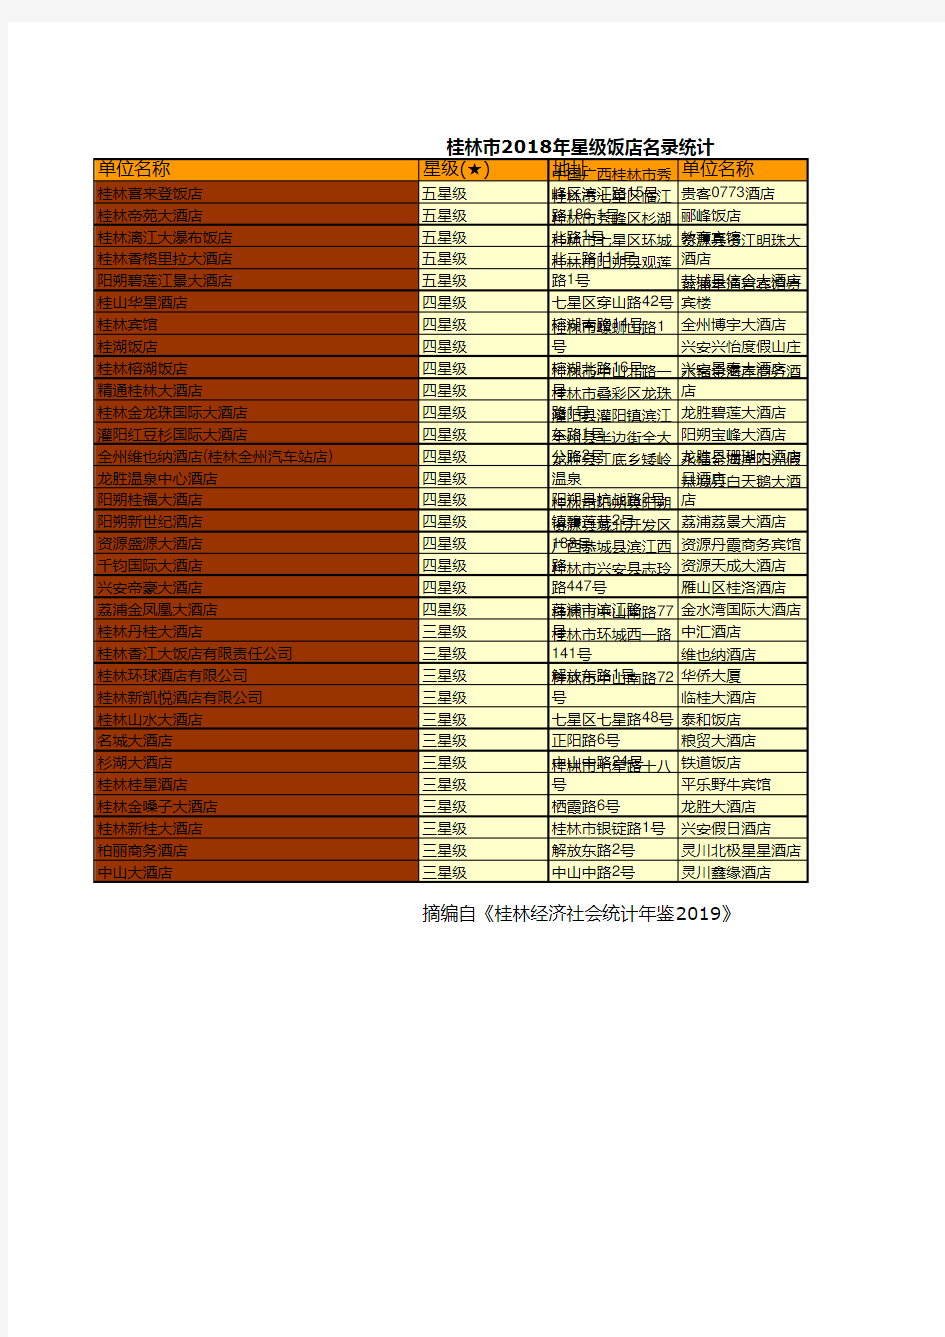 桂林市统计年鉴社会经济发展指标数据：2018年星级饭店名录统计